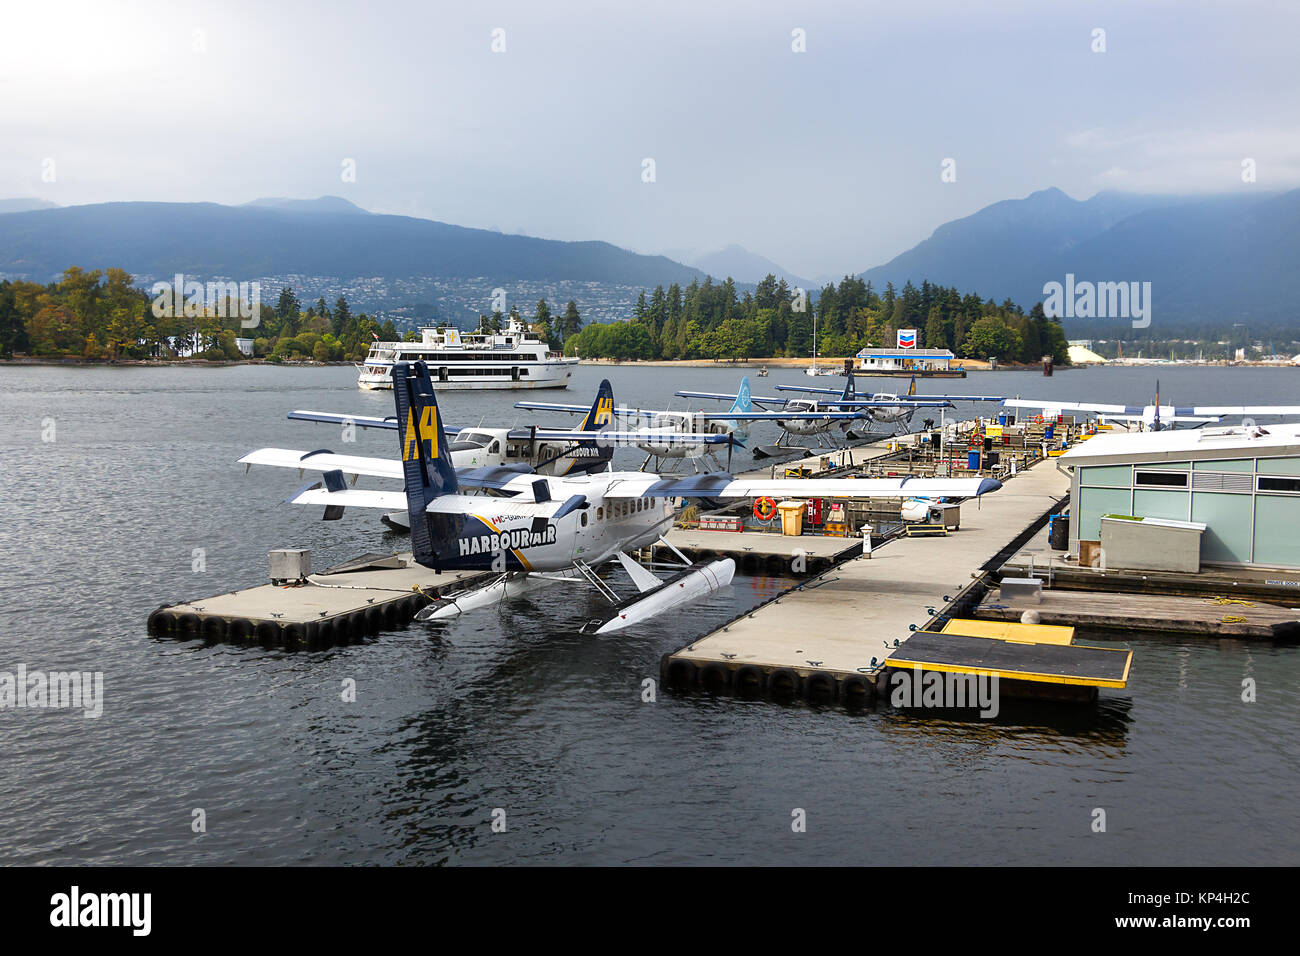 Vancouver, Kanada - August 31th, 2017: ein Wasserflugzeug DHC-6 Twin Otter Bayerische Flugzeugwerke Bf der Harbour Air am Hafen von Vancouver, Kanada. Stockfoto